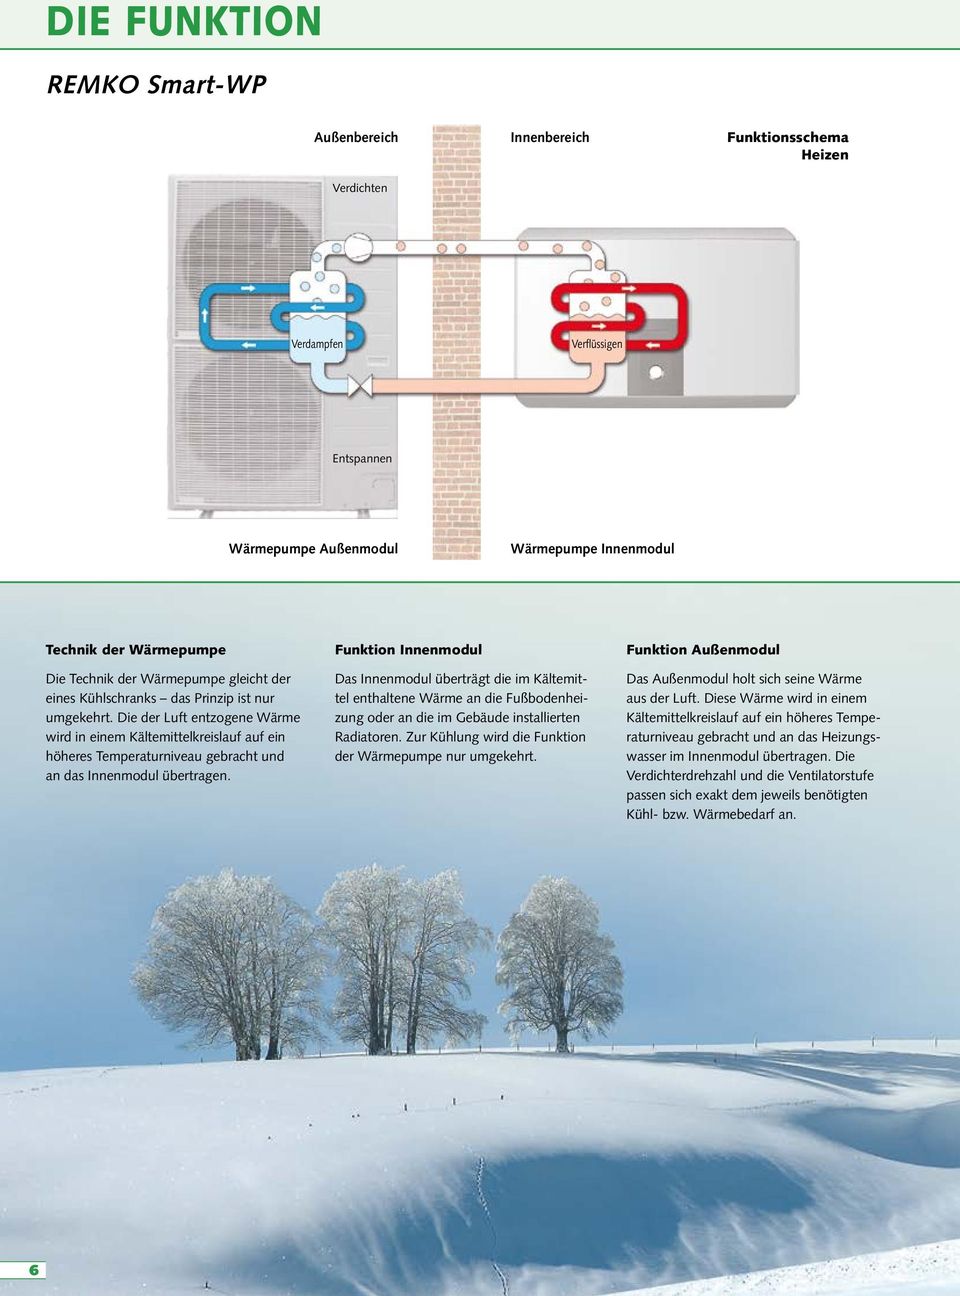 Die der Luft entzogene Wärme wird in einem Kältemittelkreislauf auf ein höheres Temperaturniveau gebracht und an das Innenmodul übertragen.